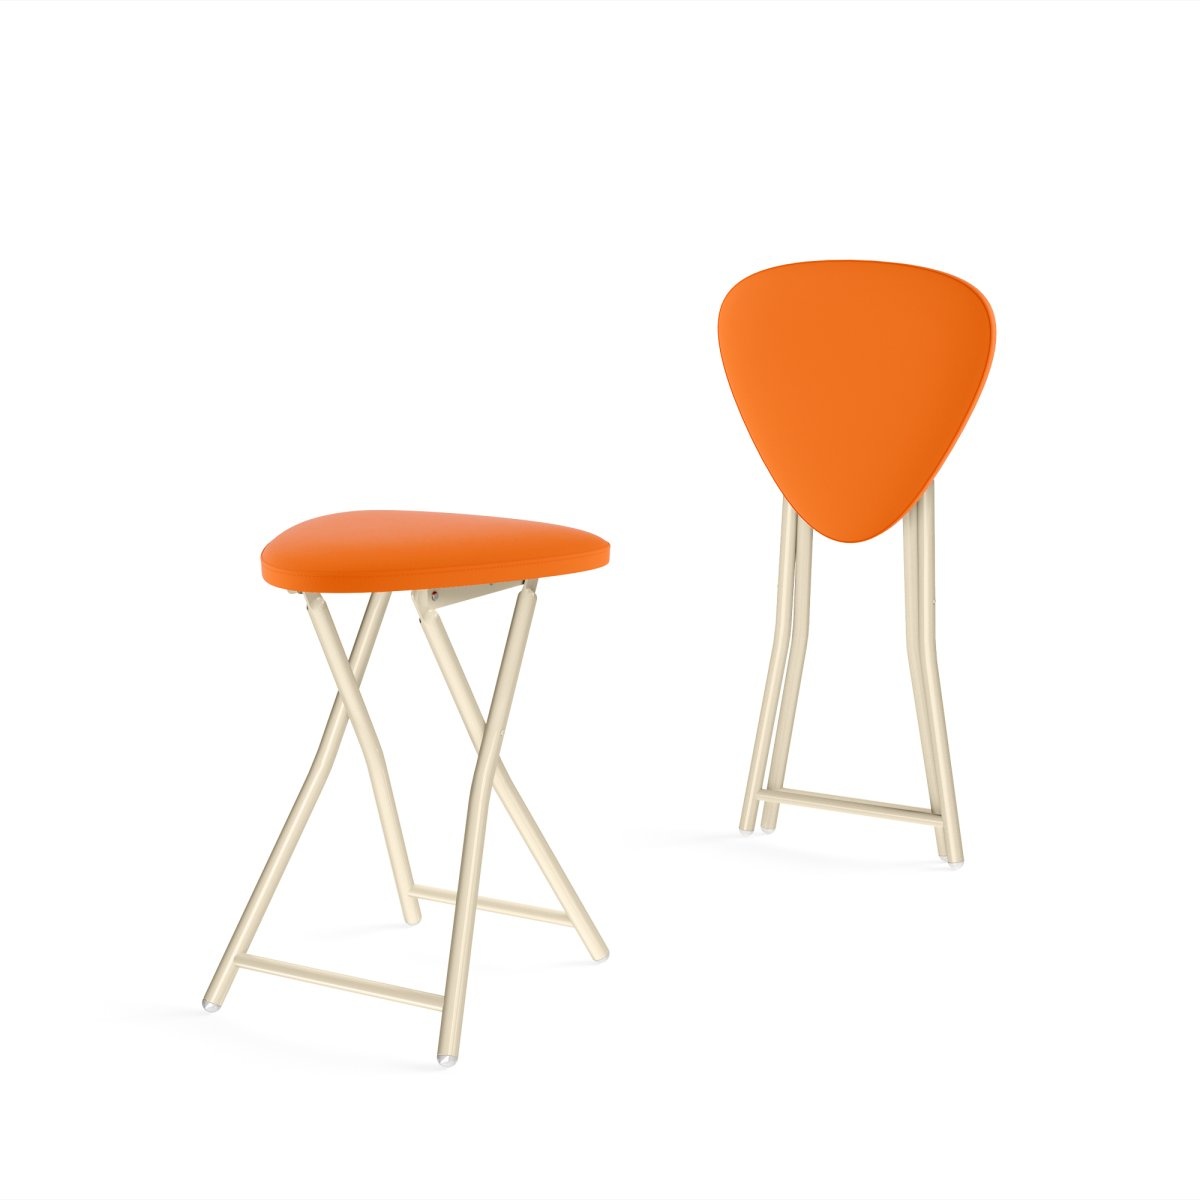 стол и стулья для кухни оранжевые